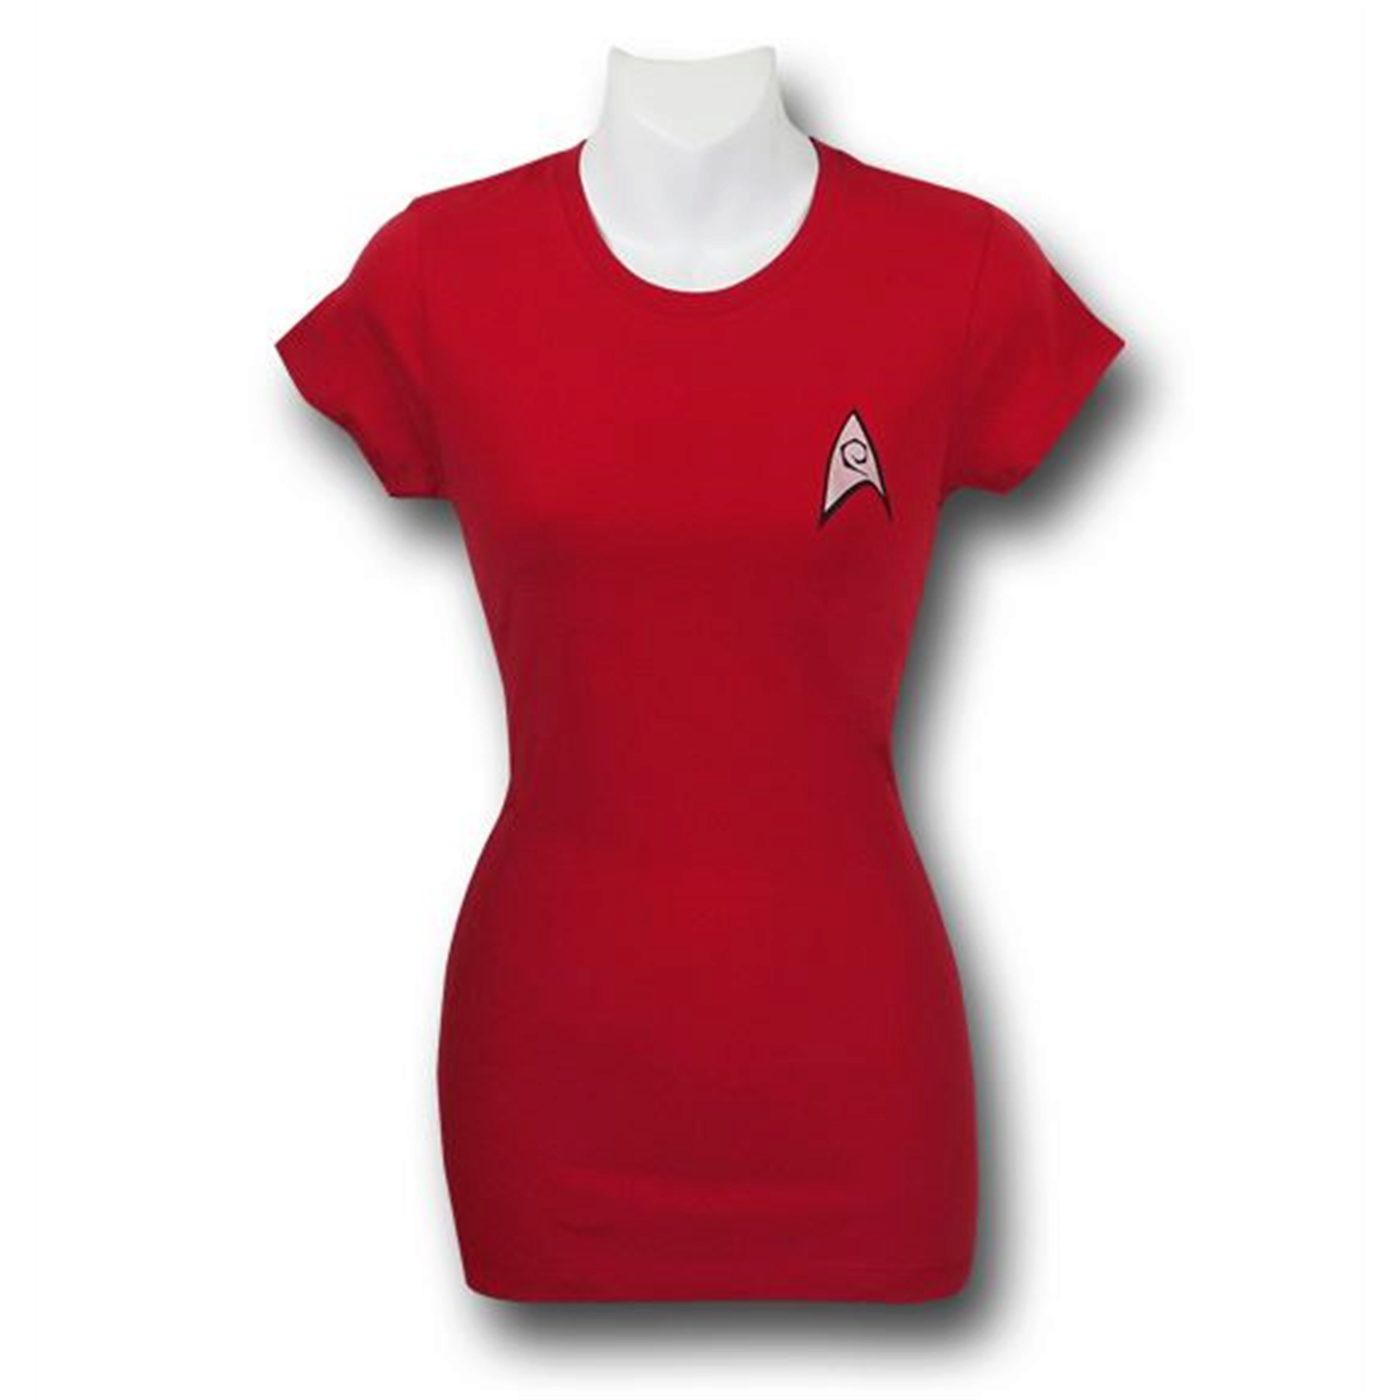 Star Trek Women's Security Uniform T-Shirt